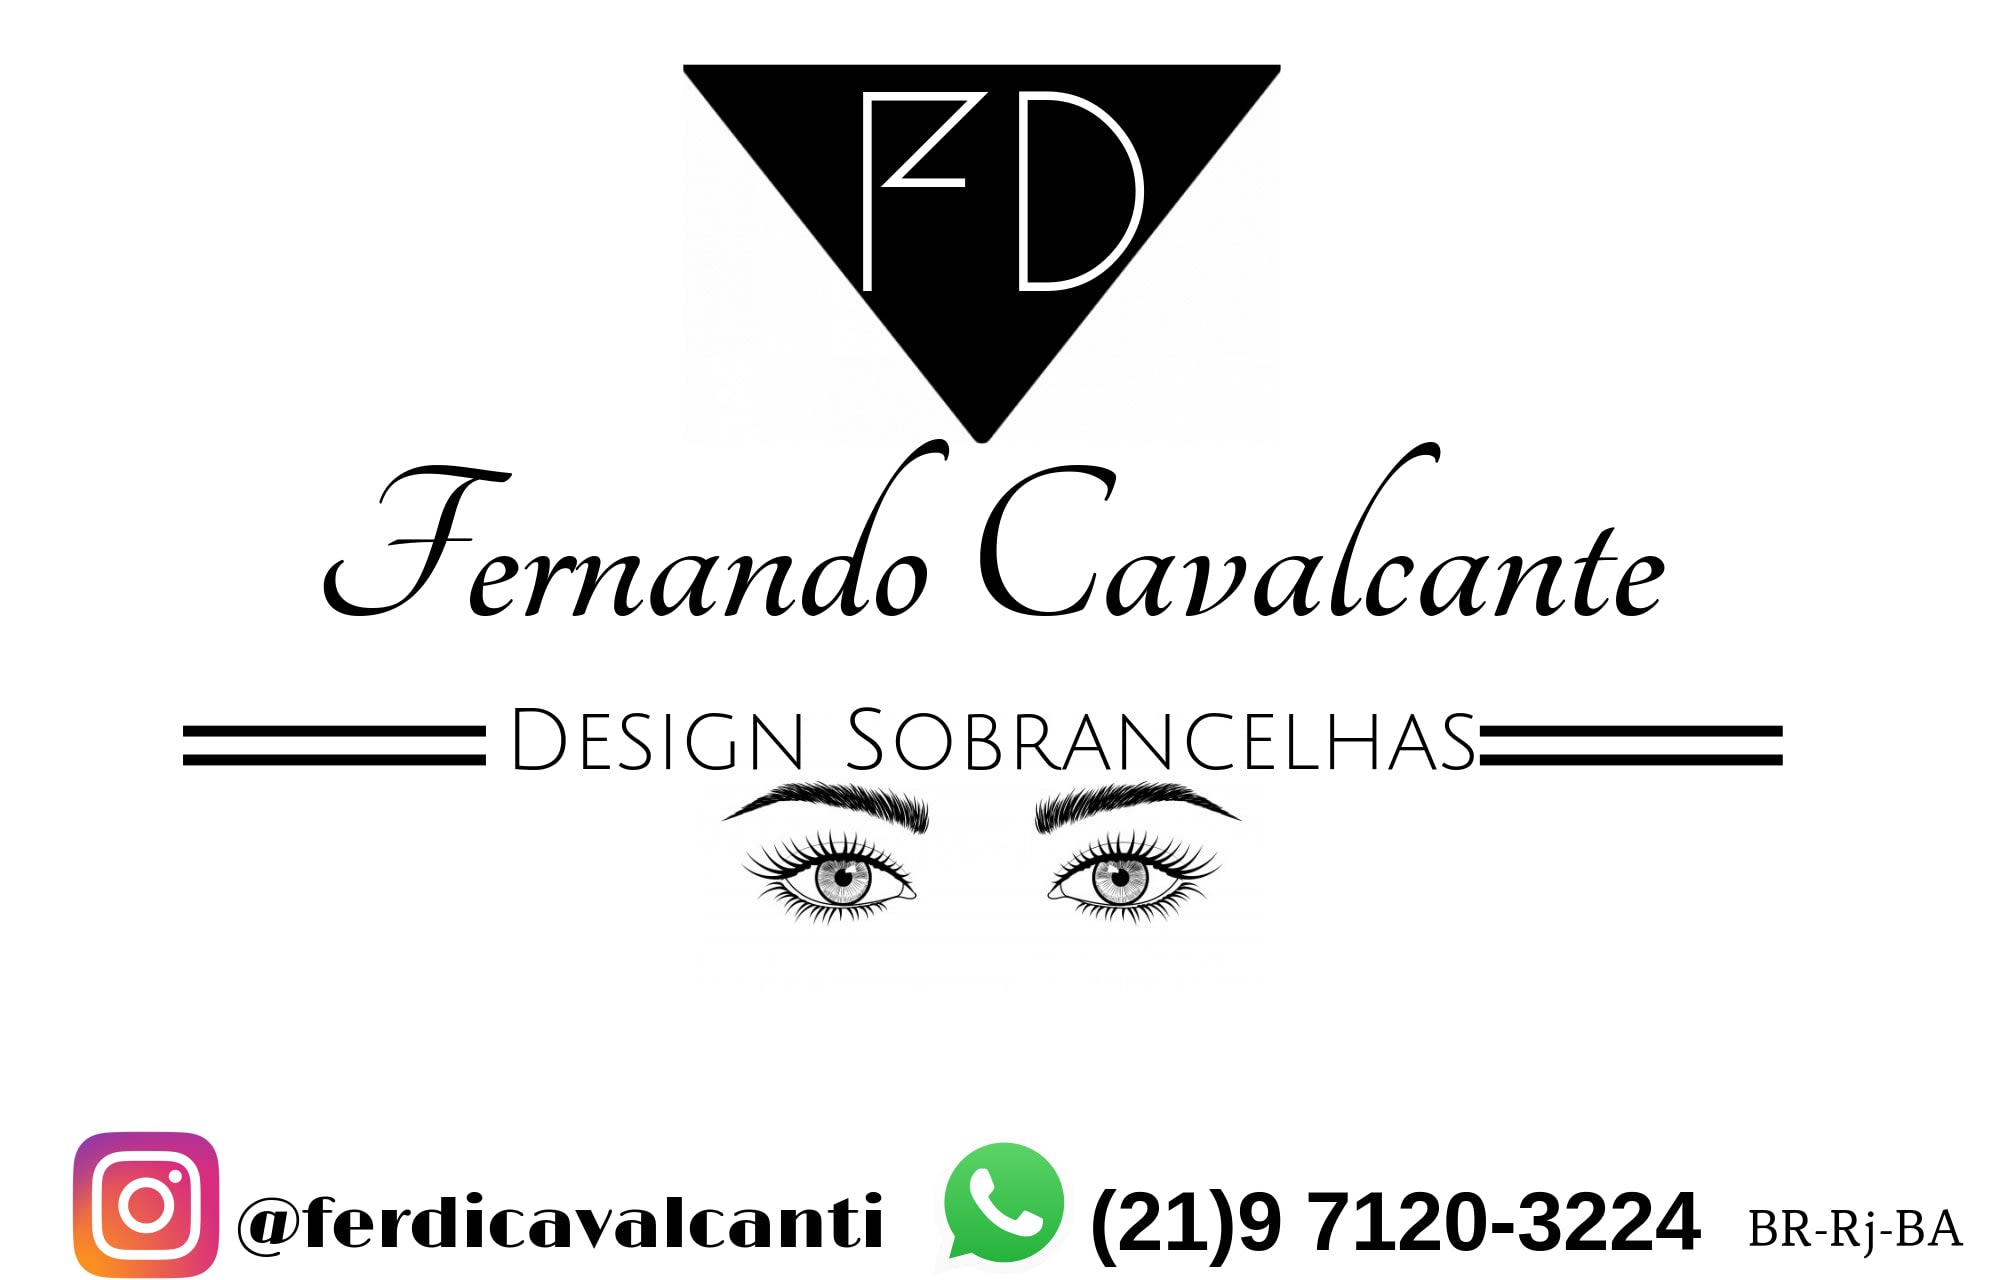 Design Sobracelhas Fernando Cavalcante